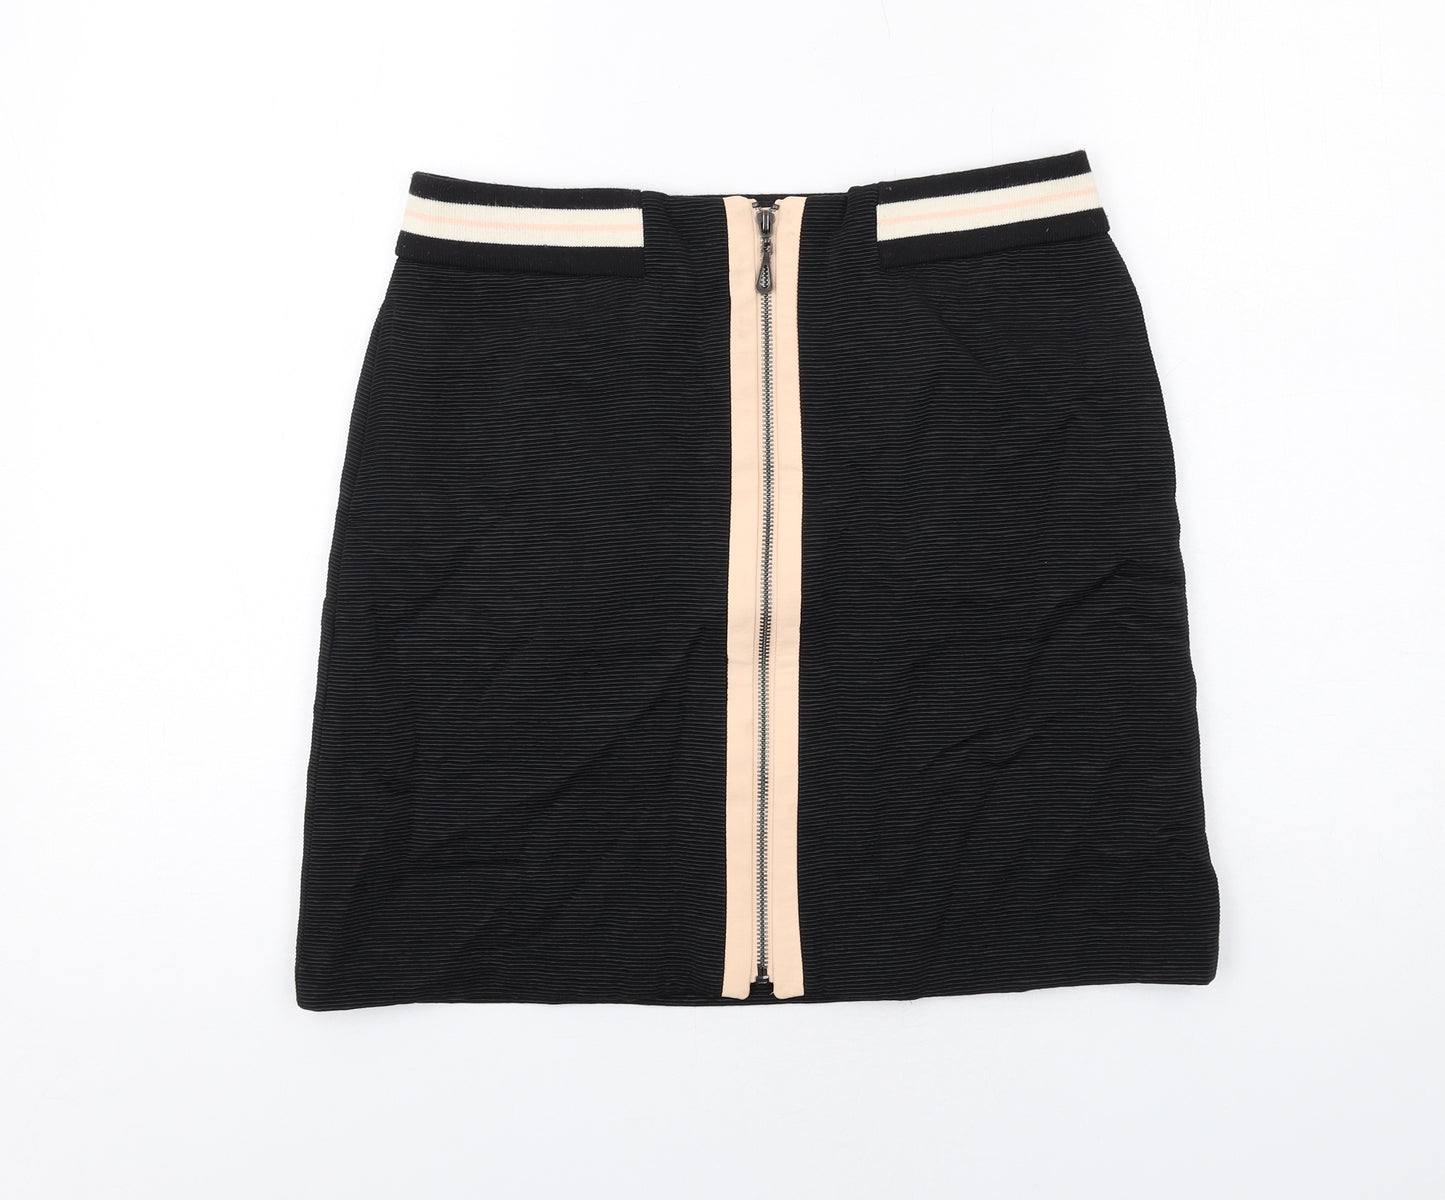 NEXT Womens Black Viscose A-Line Skirt Size 8 Zip